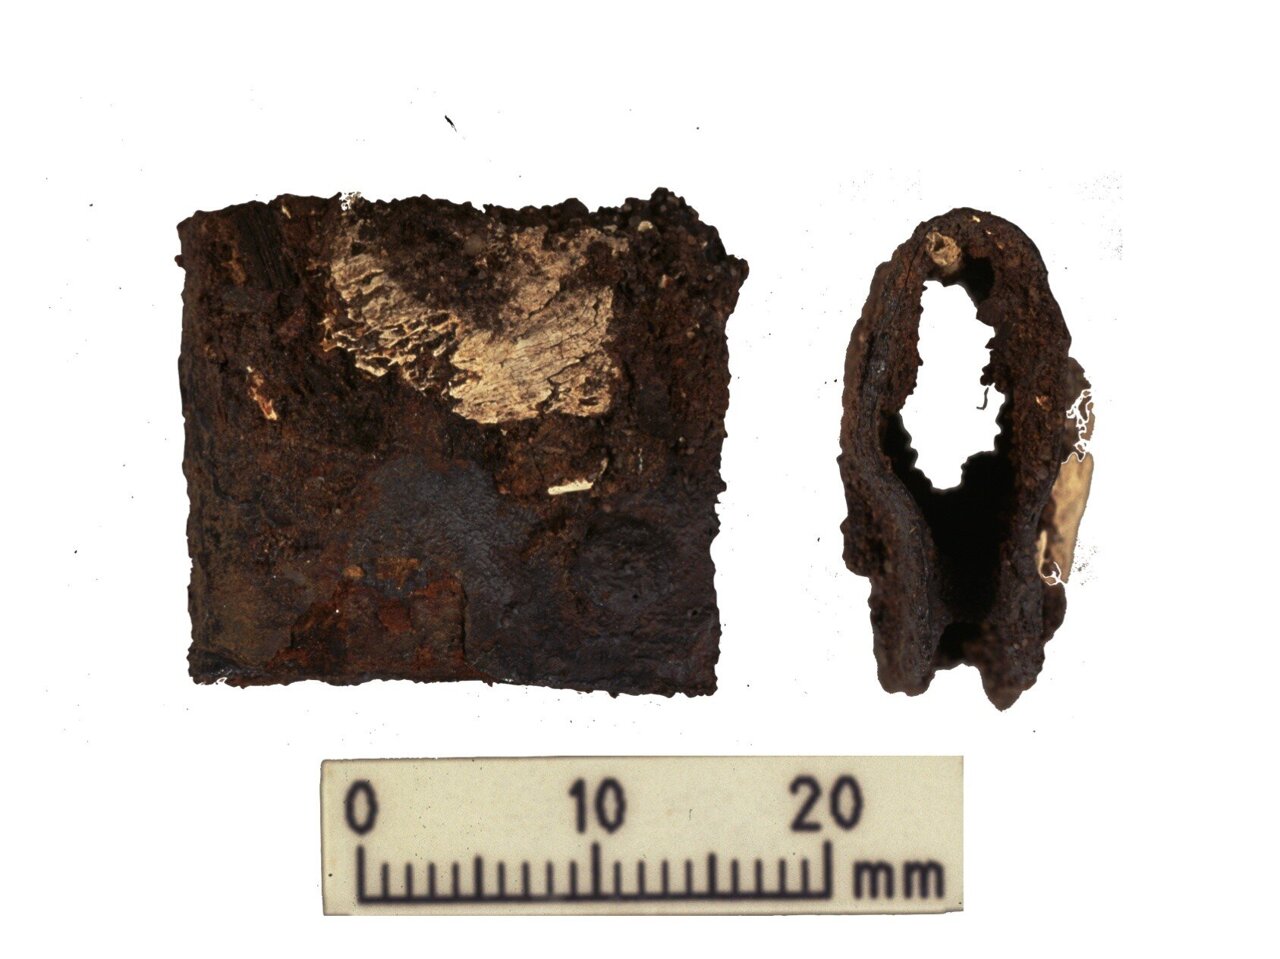 گیره ای از سپر جنگجوی وایکینگ که در حفاری های اصلی در سال های 1998-2000 یافت شد. این قلاب در همان قبری پیدا شد که بقایای انسان و حیوان در آخرین تحقیقات تجزیه و تحلیل شده بود.